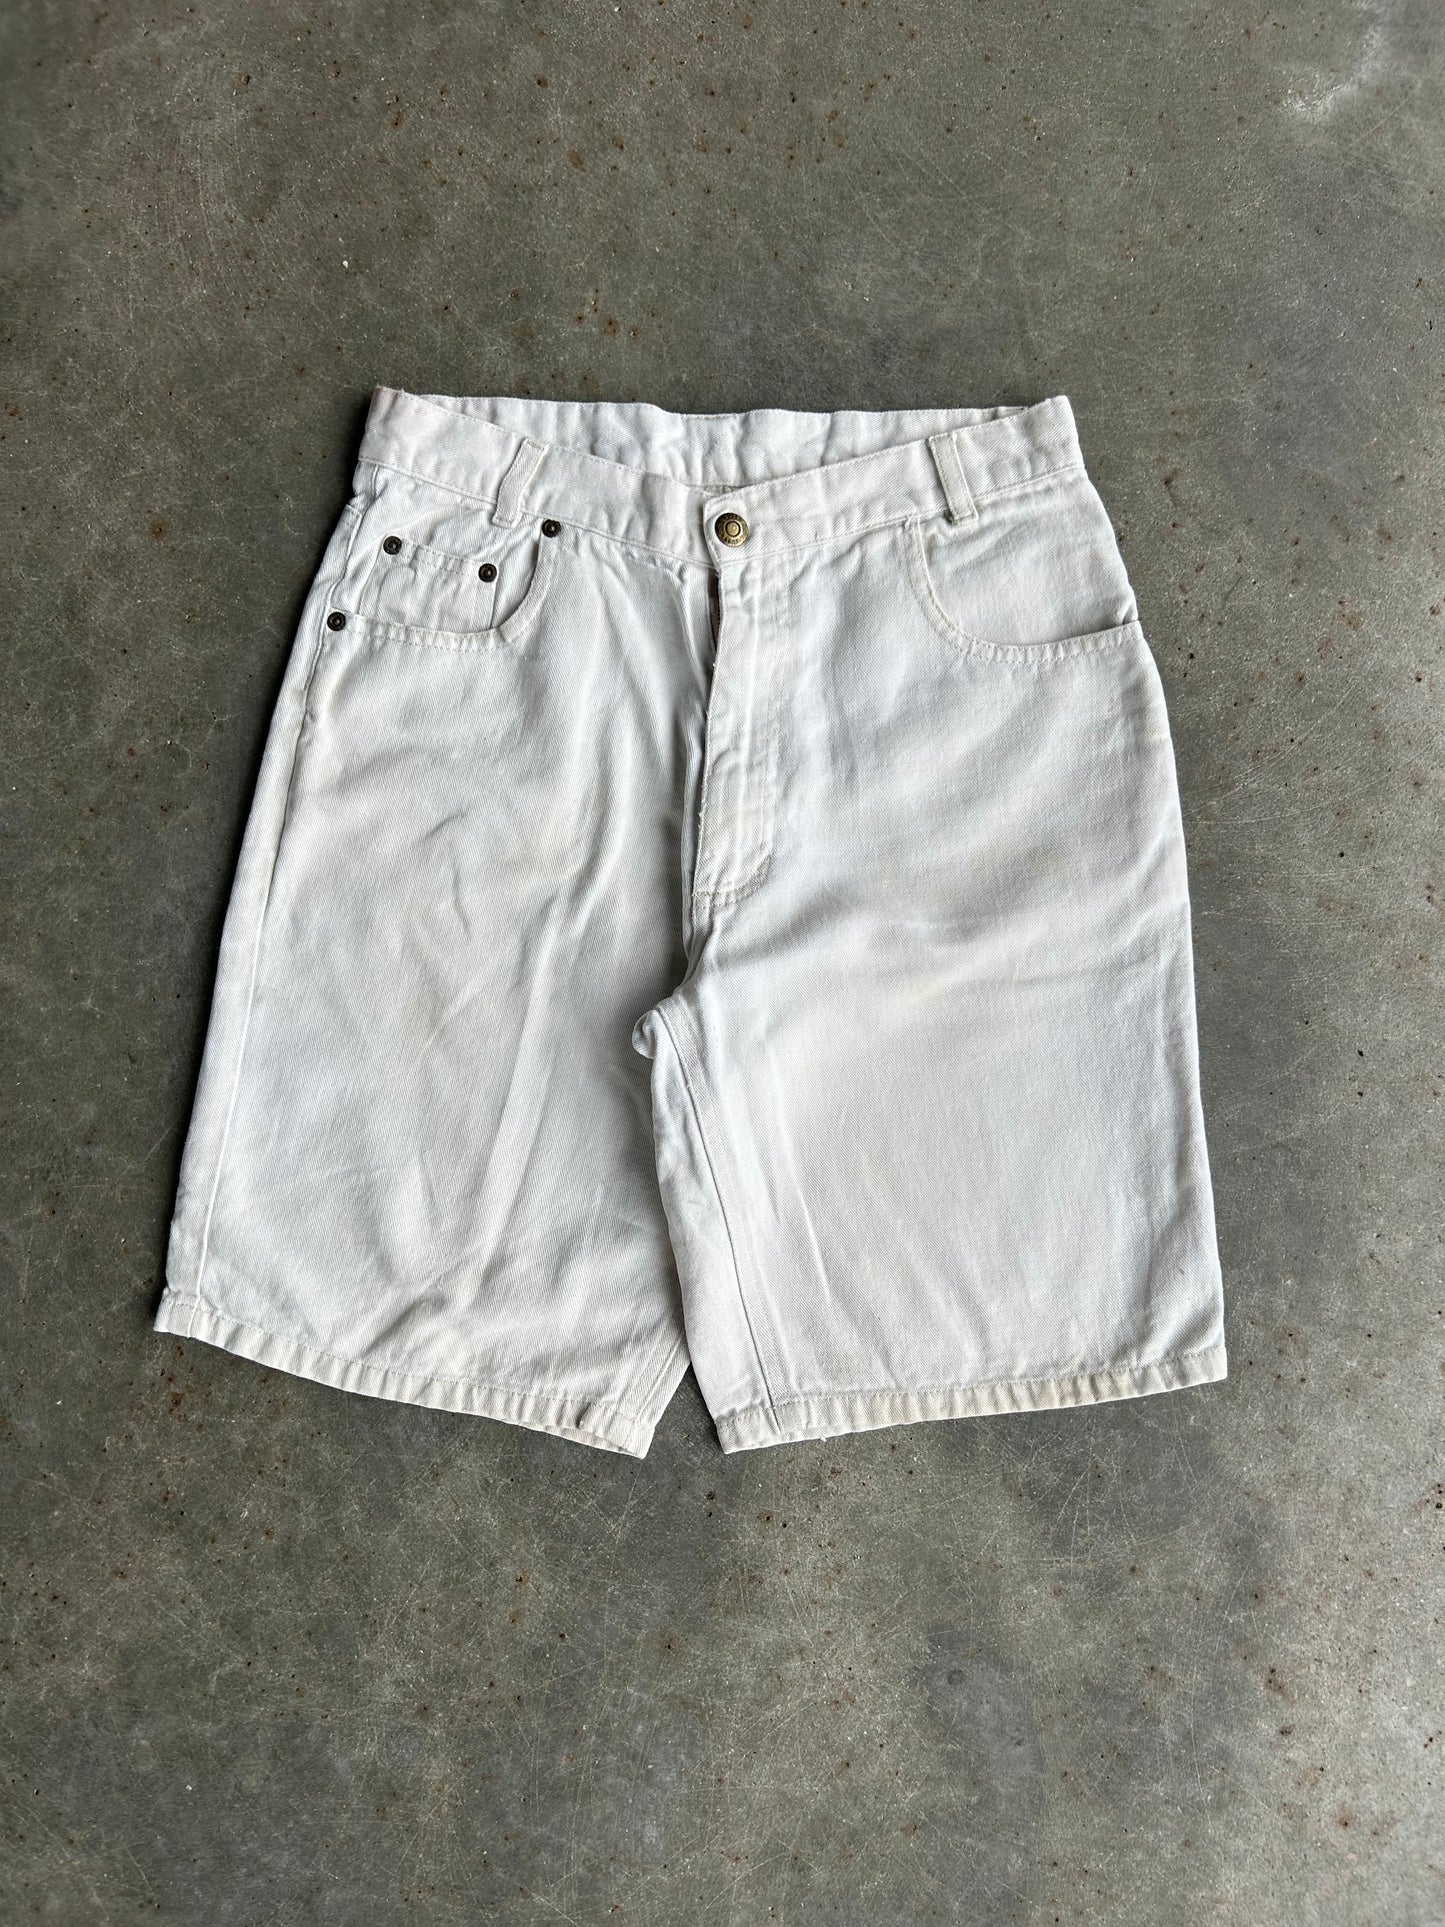 Vintage Bugleboy Shorts - 29